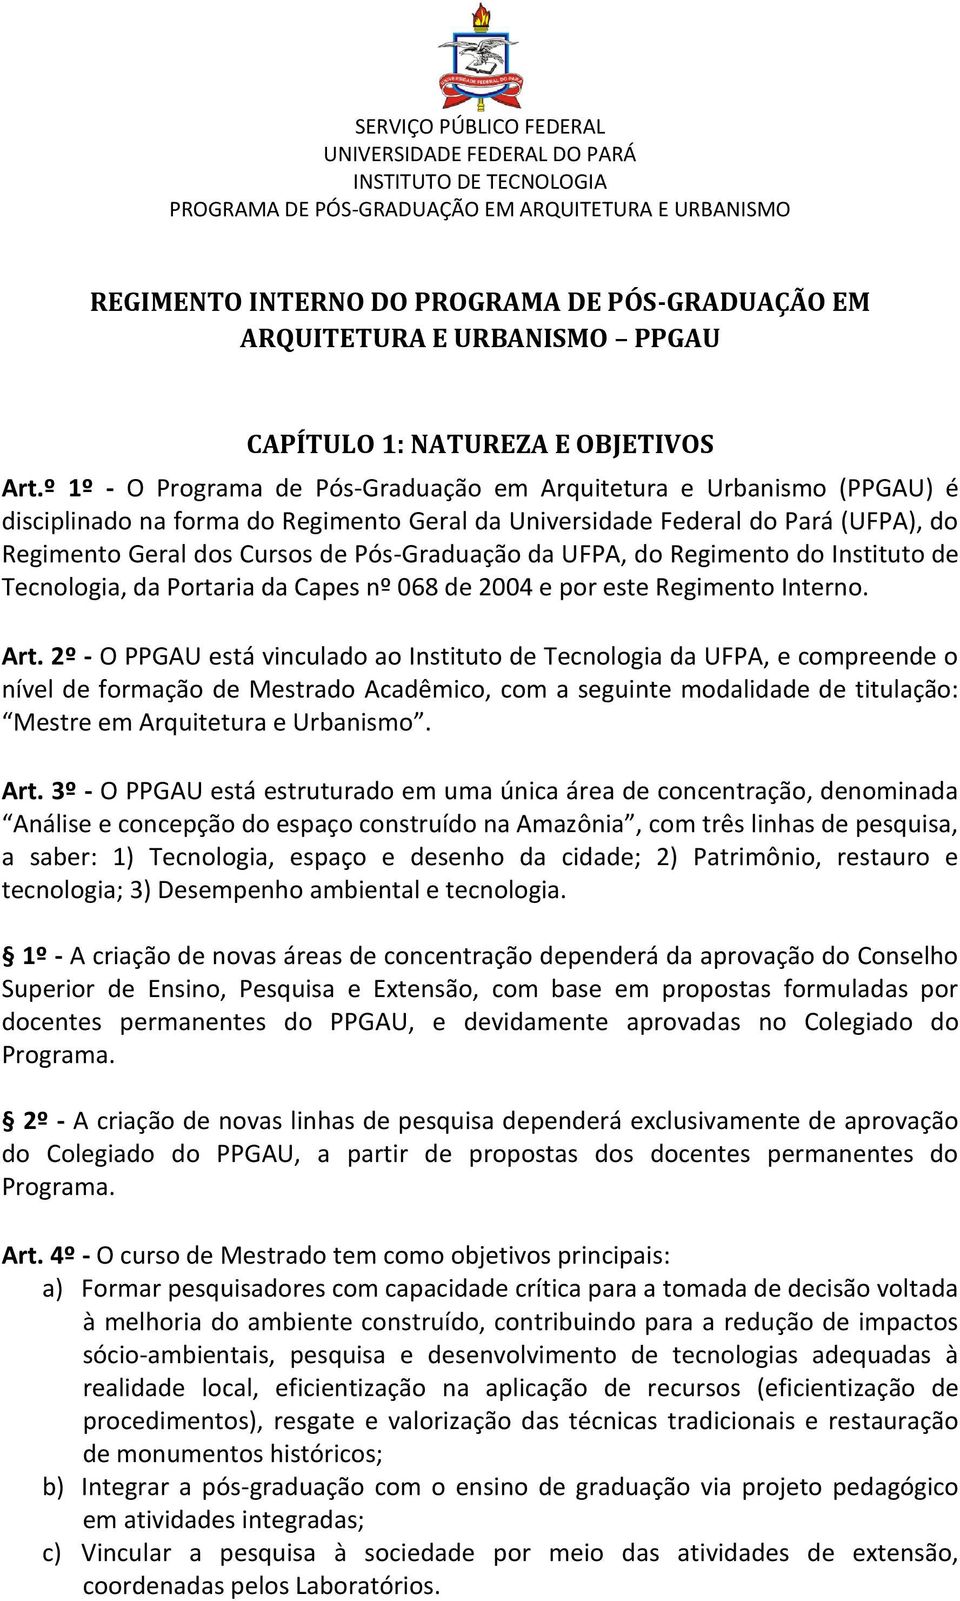 º 1º - O Programa de Pós-Graduação em Arquitetura e Urbanismo (PPGAU) é disciplinado na forma do Regimento Geral da Universidade Federal do Pará (UFPA), do Regimento Geral dos Cursos de Pós-Graduação